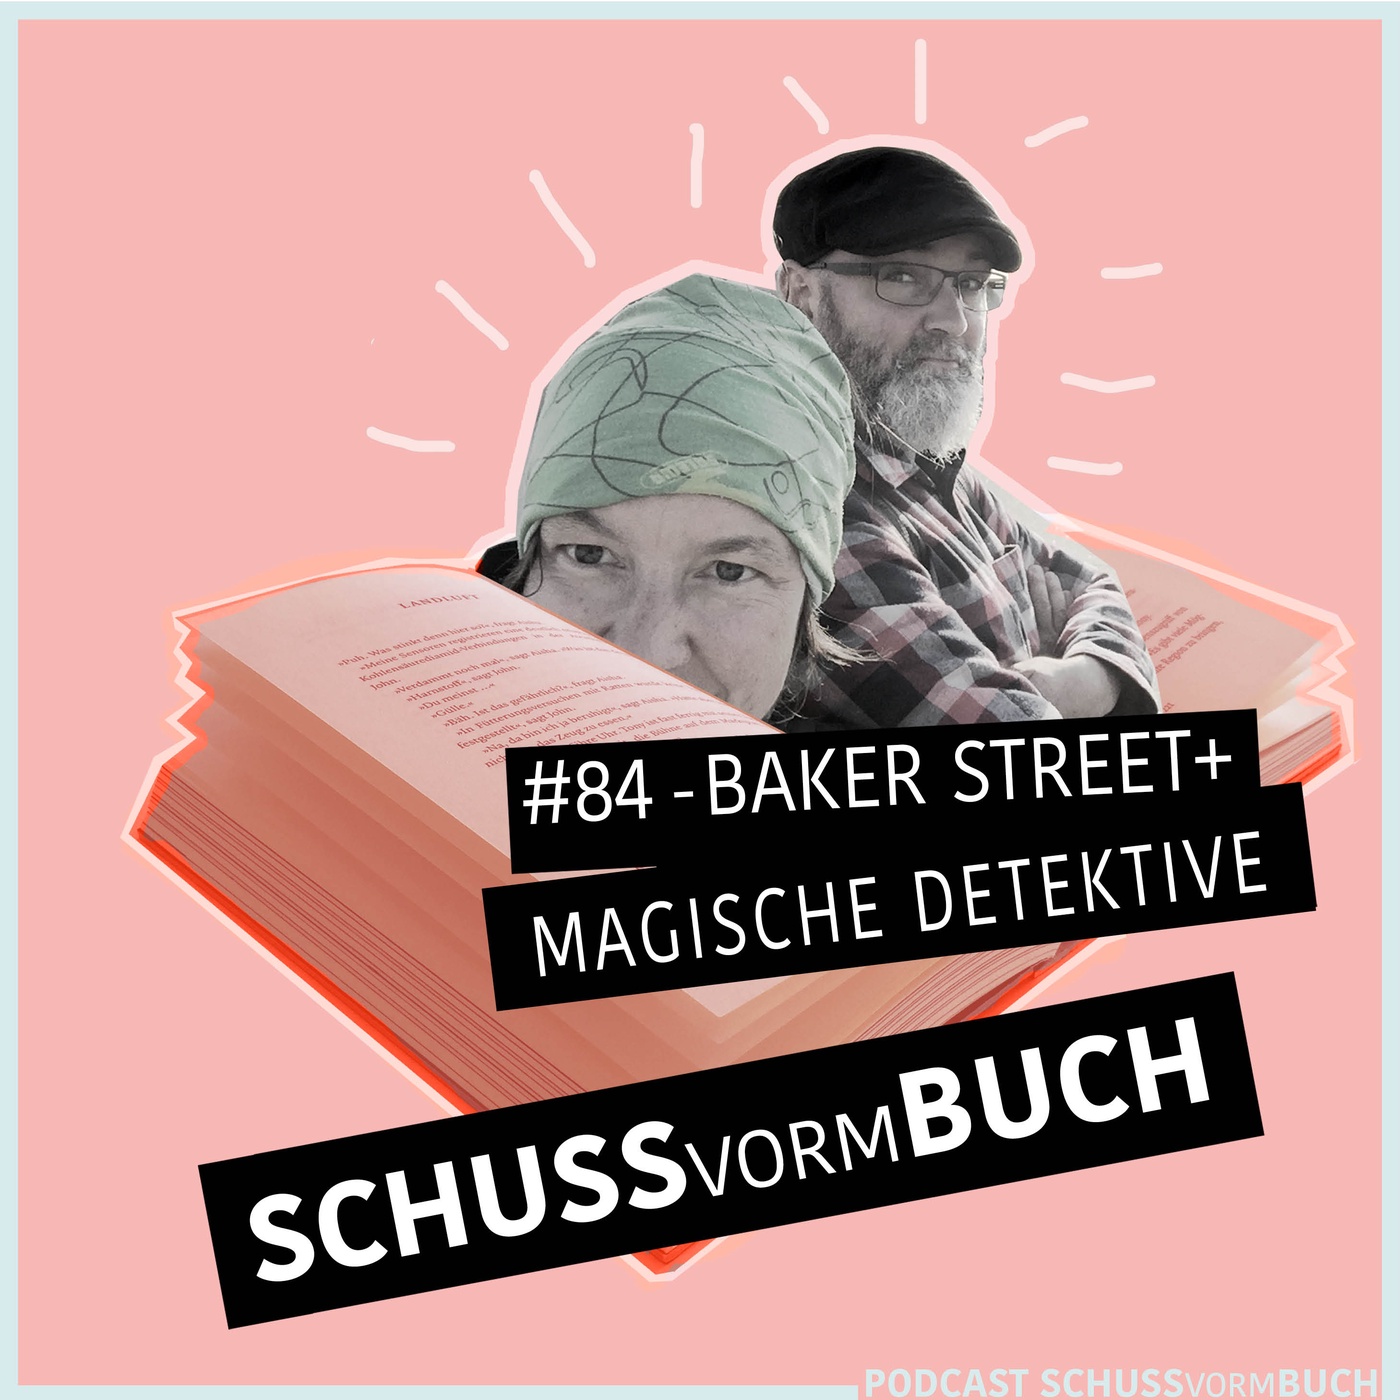 #84 - Baker Street + Magische Detektive